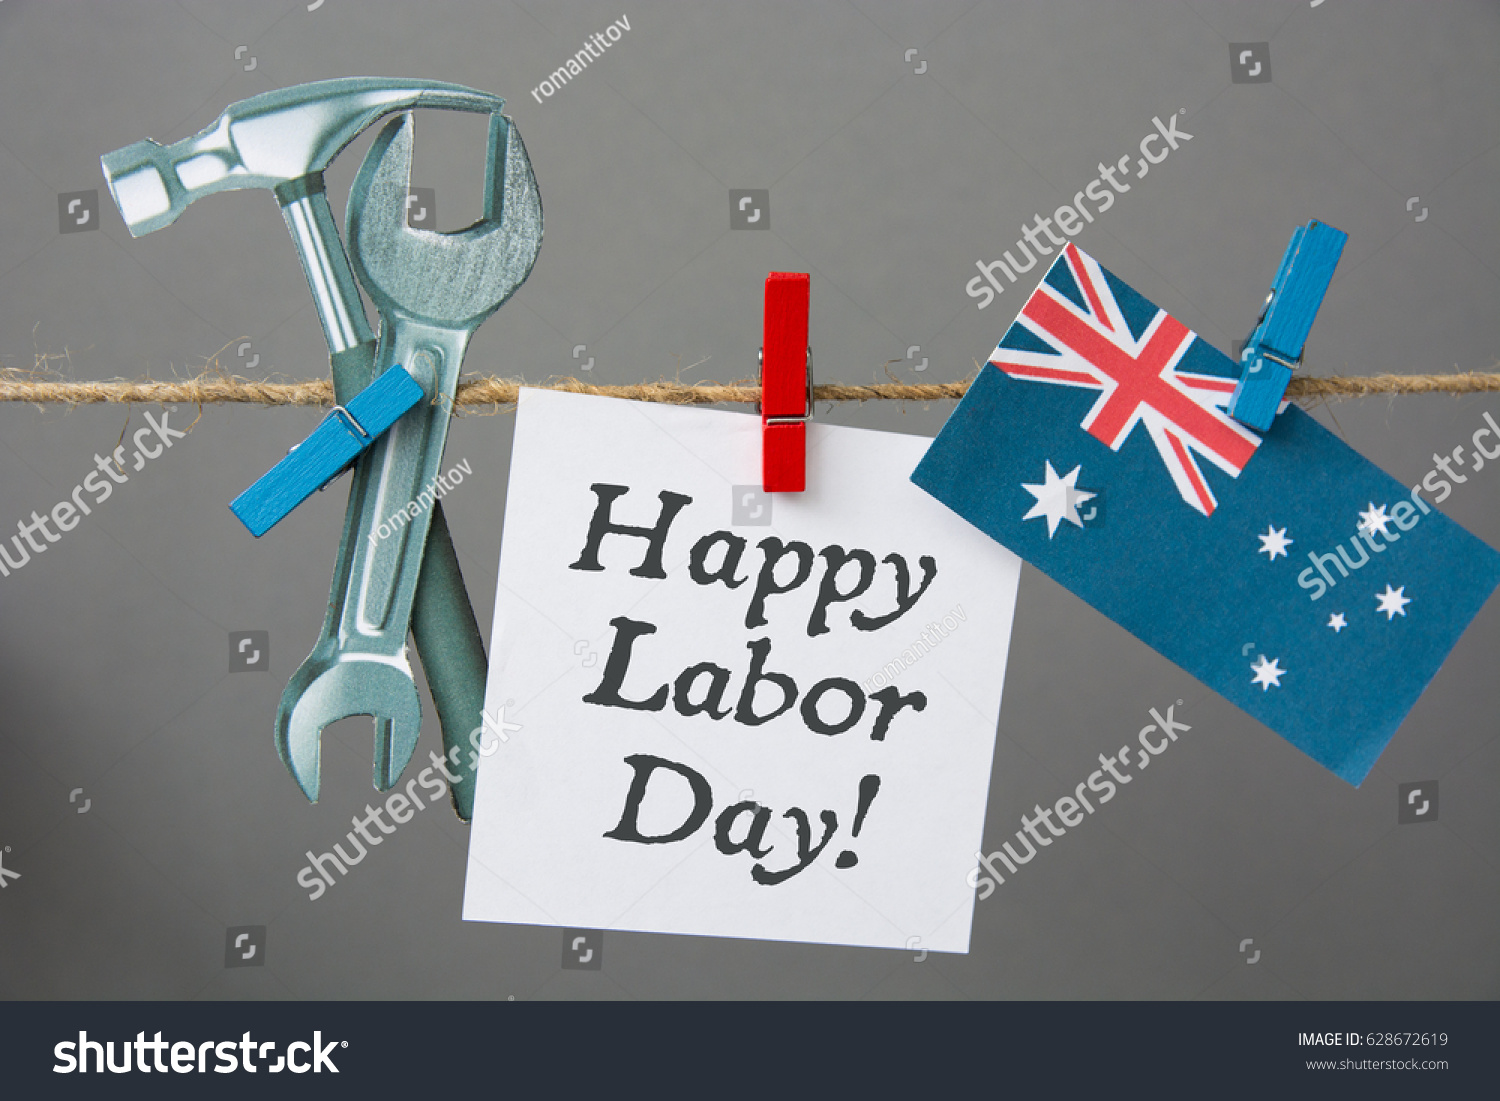 Happy Labor Day Australia Card 1 Stock Photo 628672619 Shutterstock